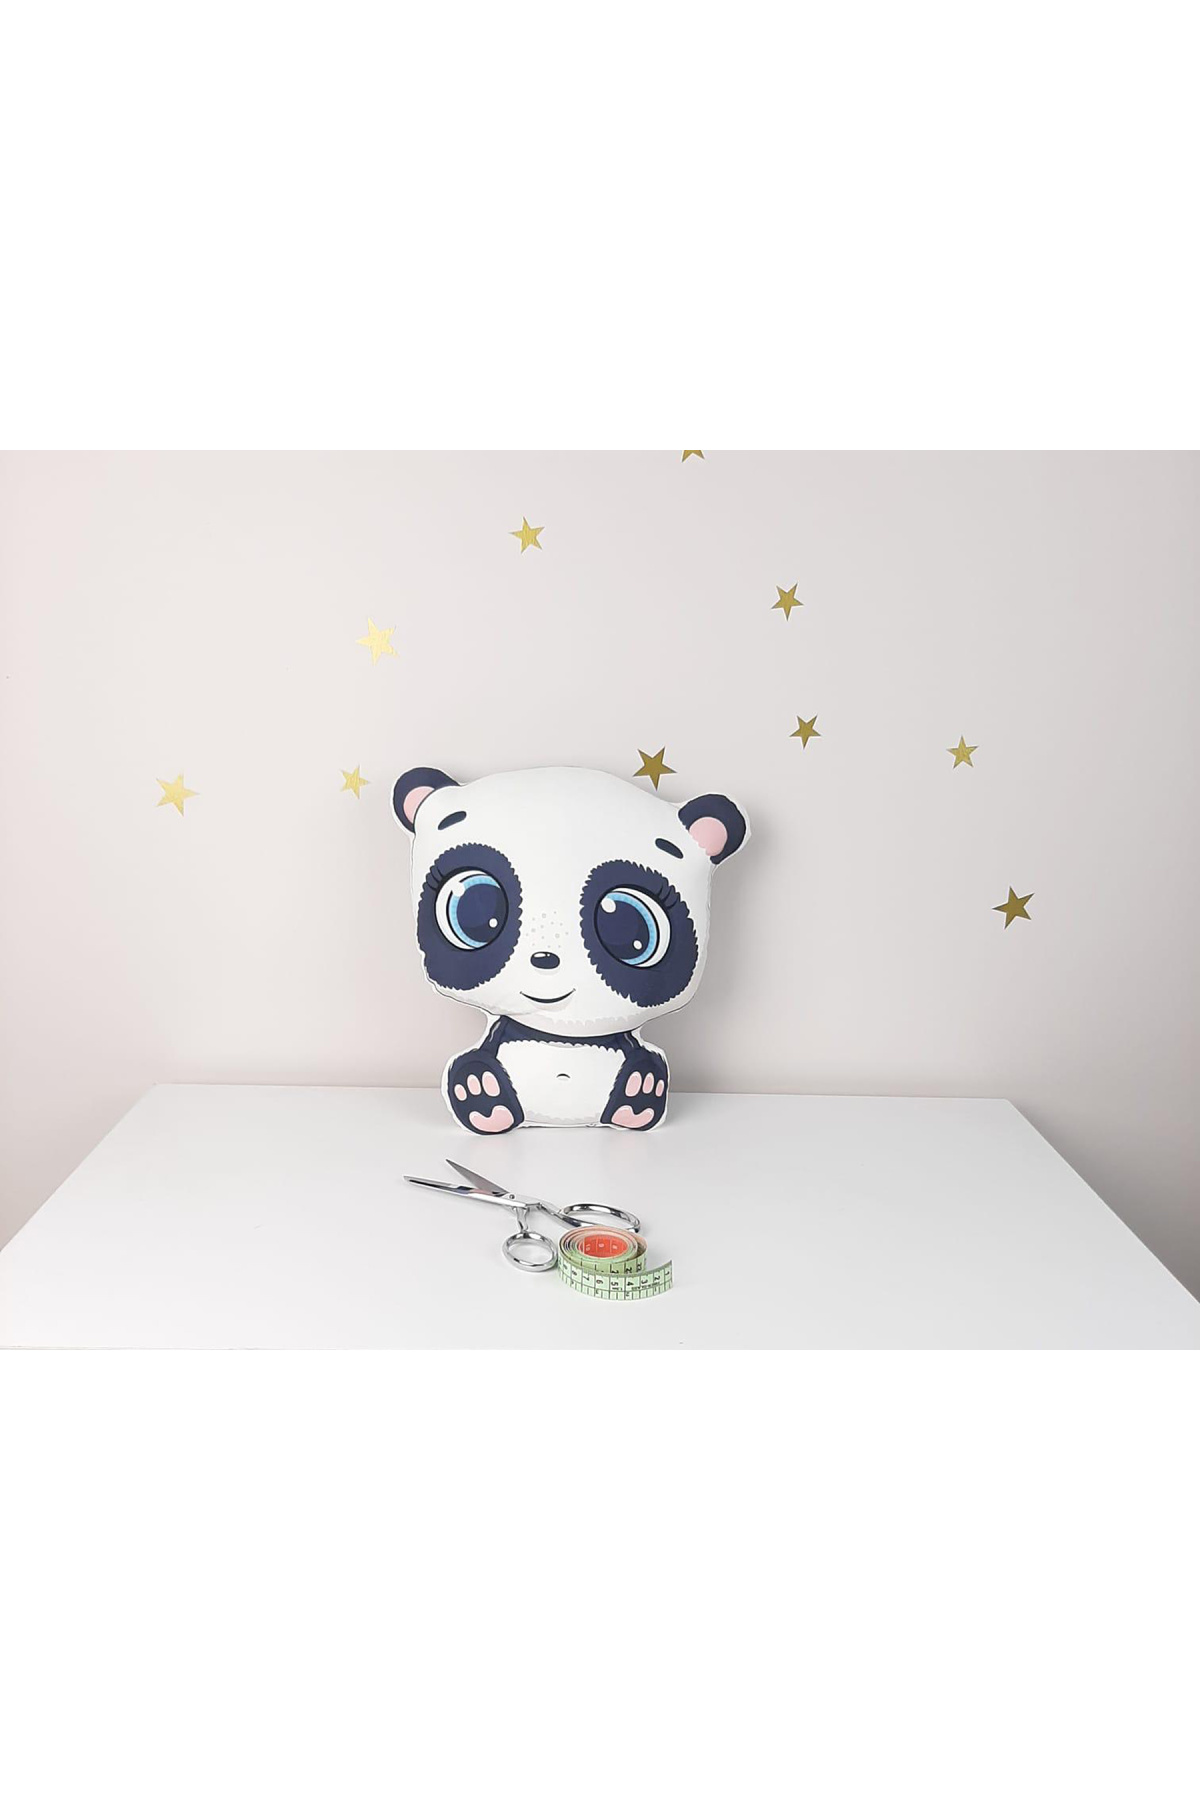 MEKTA HOME Mekta Home Panda Pofuduk Dekoratif Uyku Arkadaşı Yastığı ve Kırlent MKTUA-015